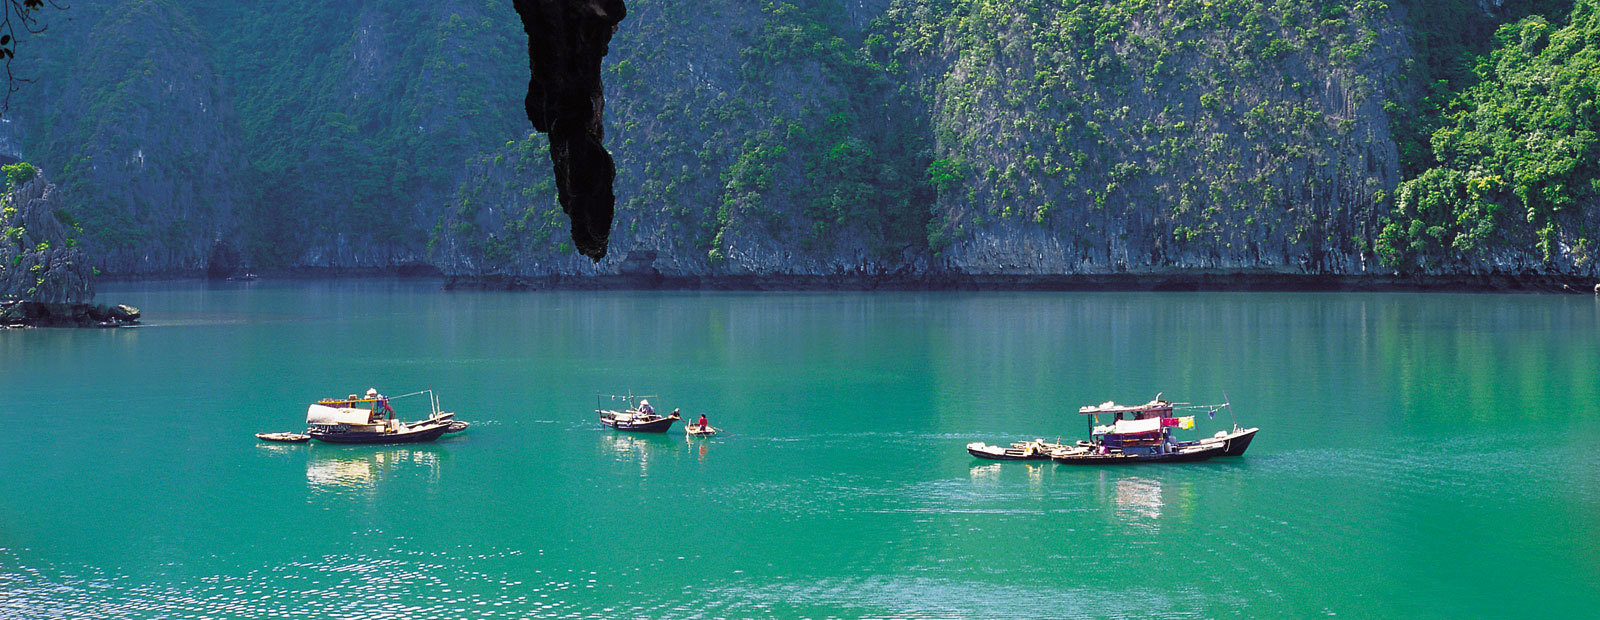 Båtar glider fram i turkosblått vatten i Halongbukten